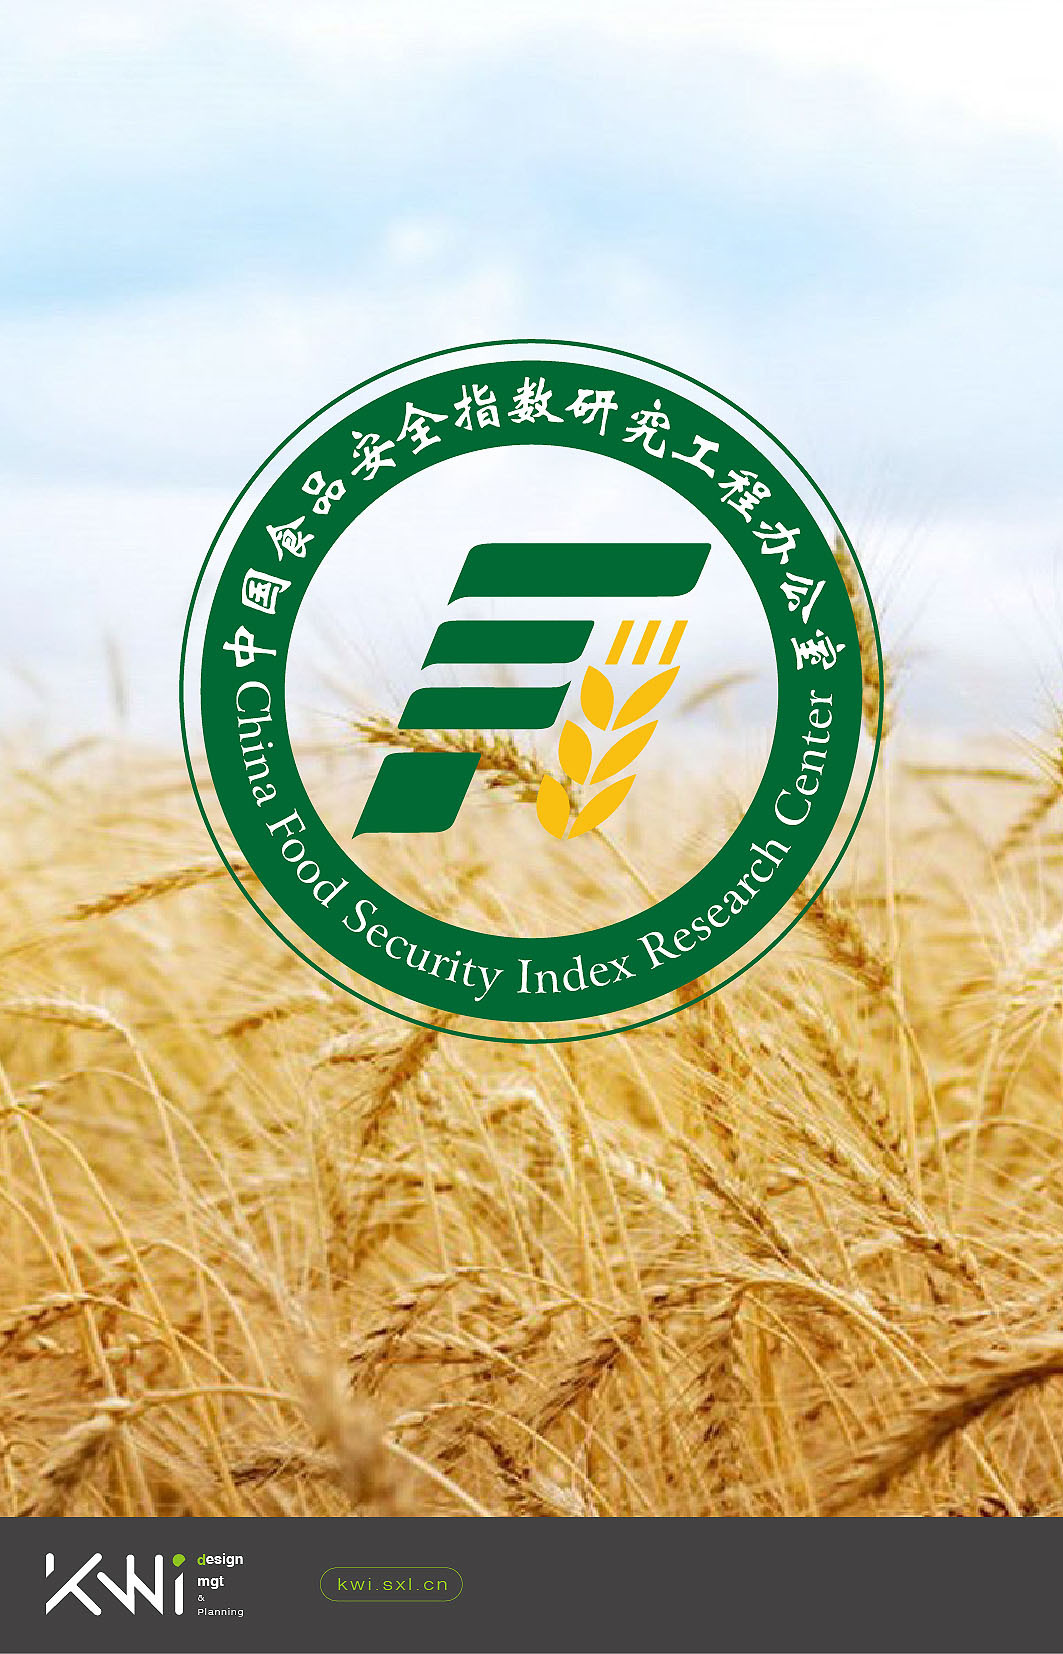 中国食品安全指数研究办公室logo/VI设计图0